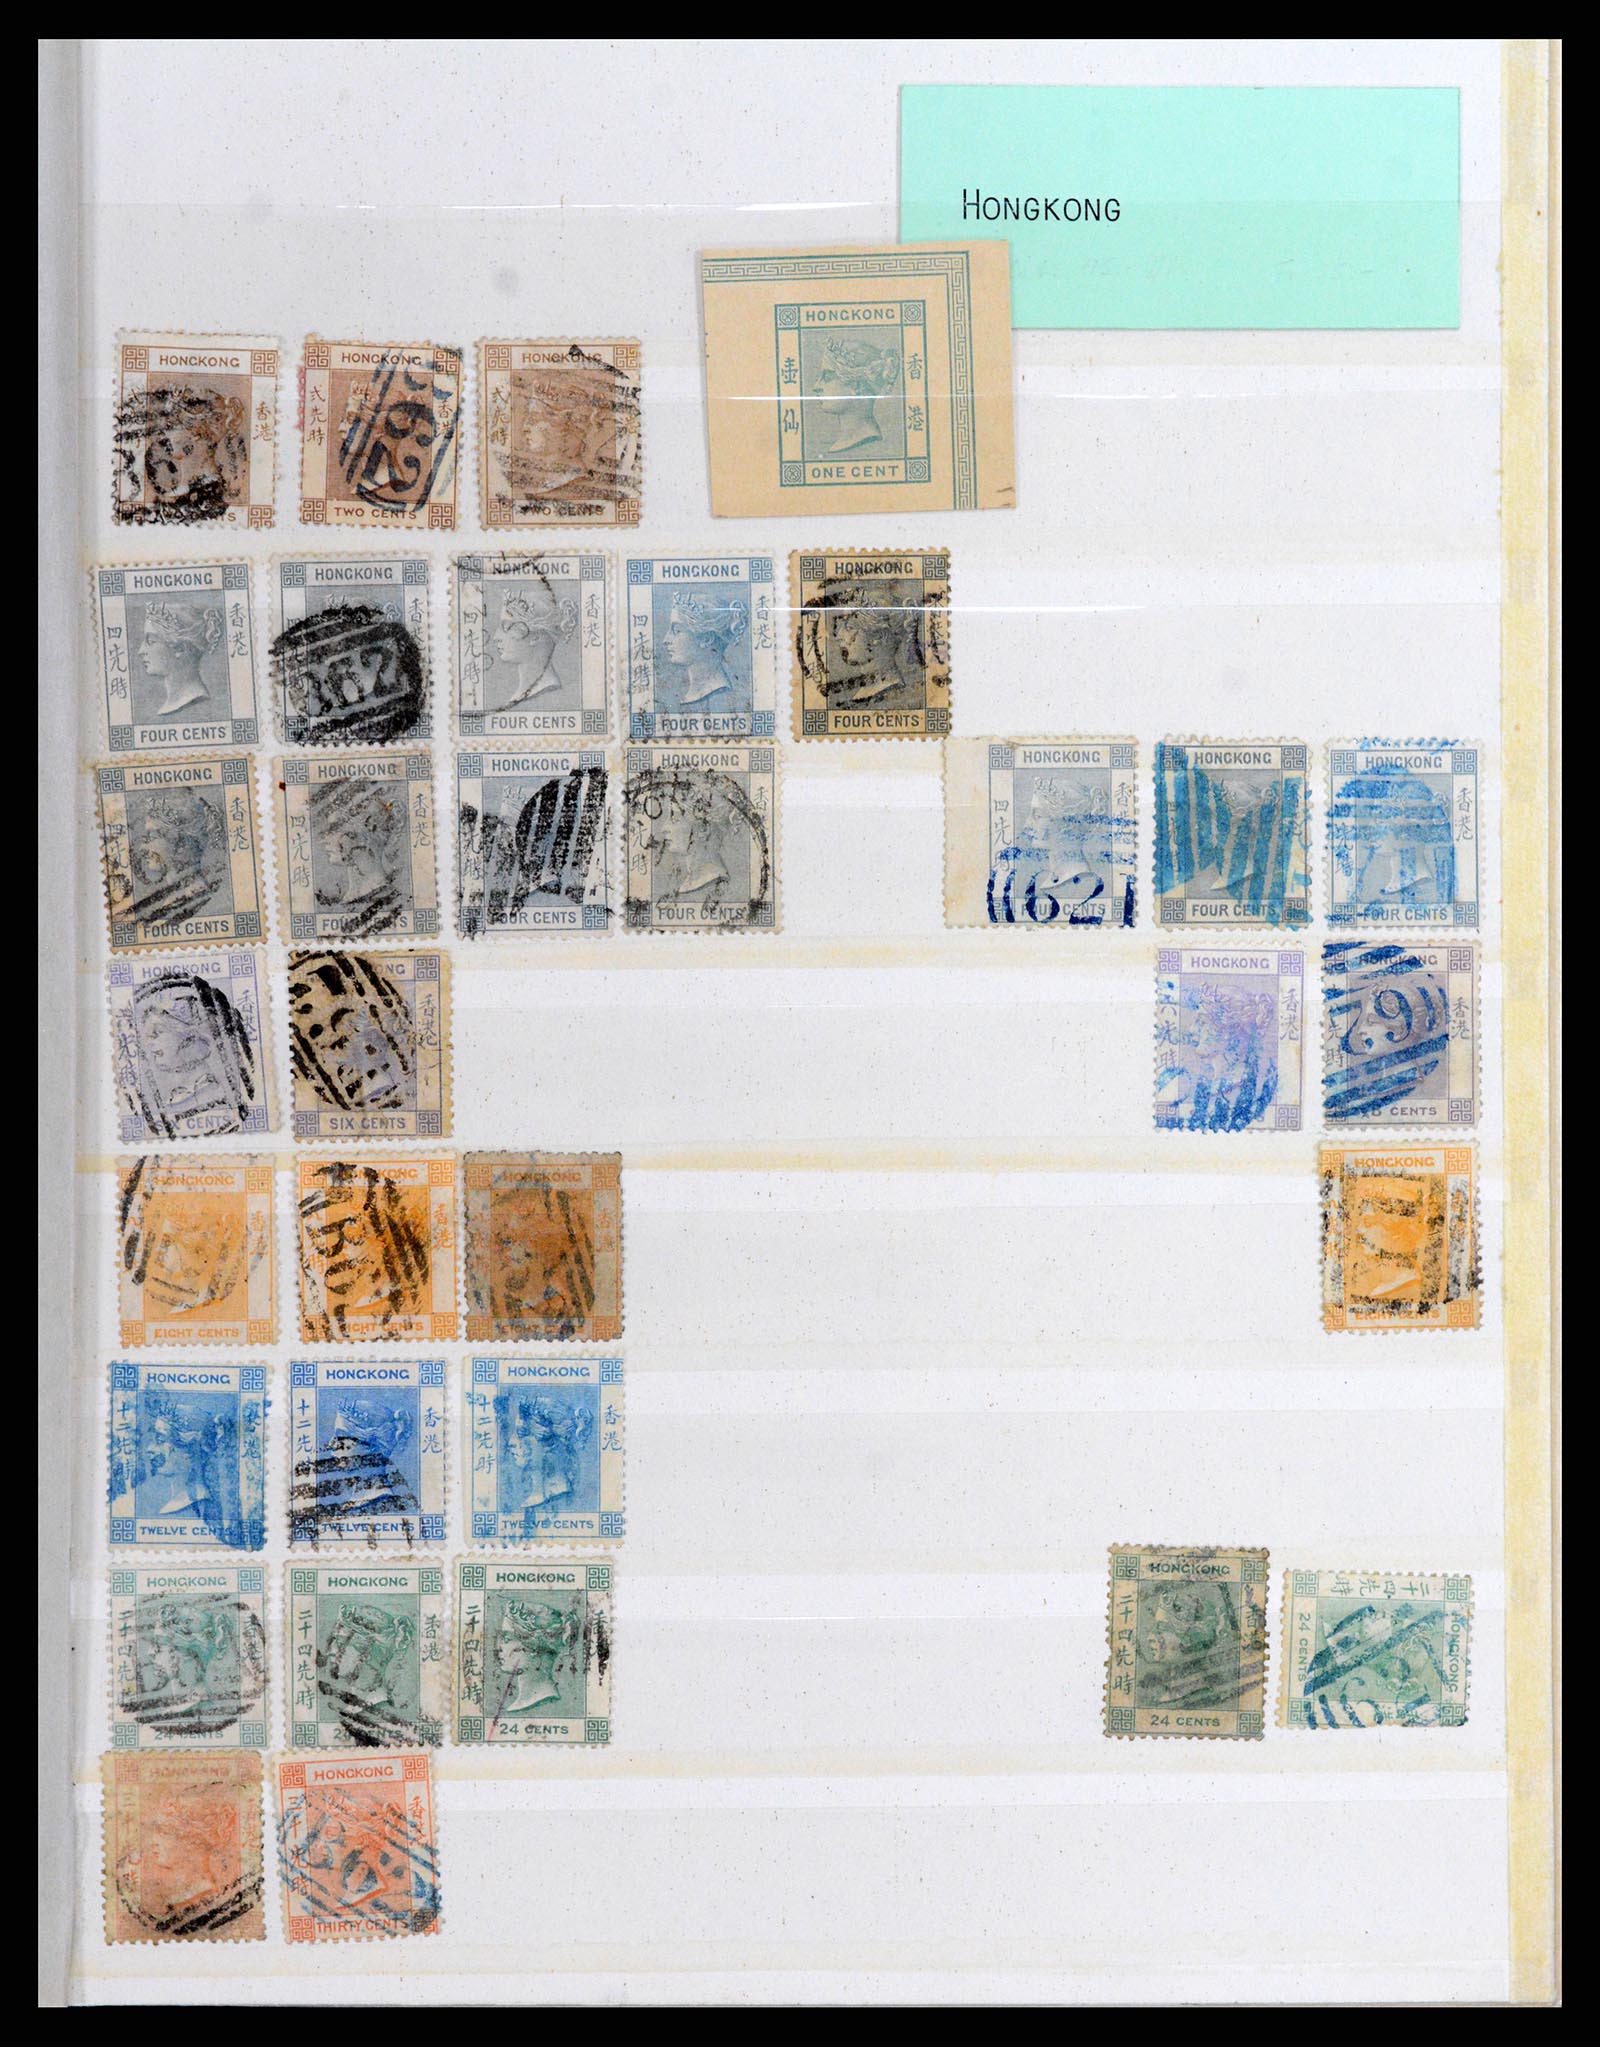 37358 001 - Stamp collection 37358 Hong Kong 1861-1997.